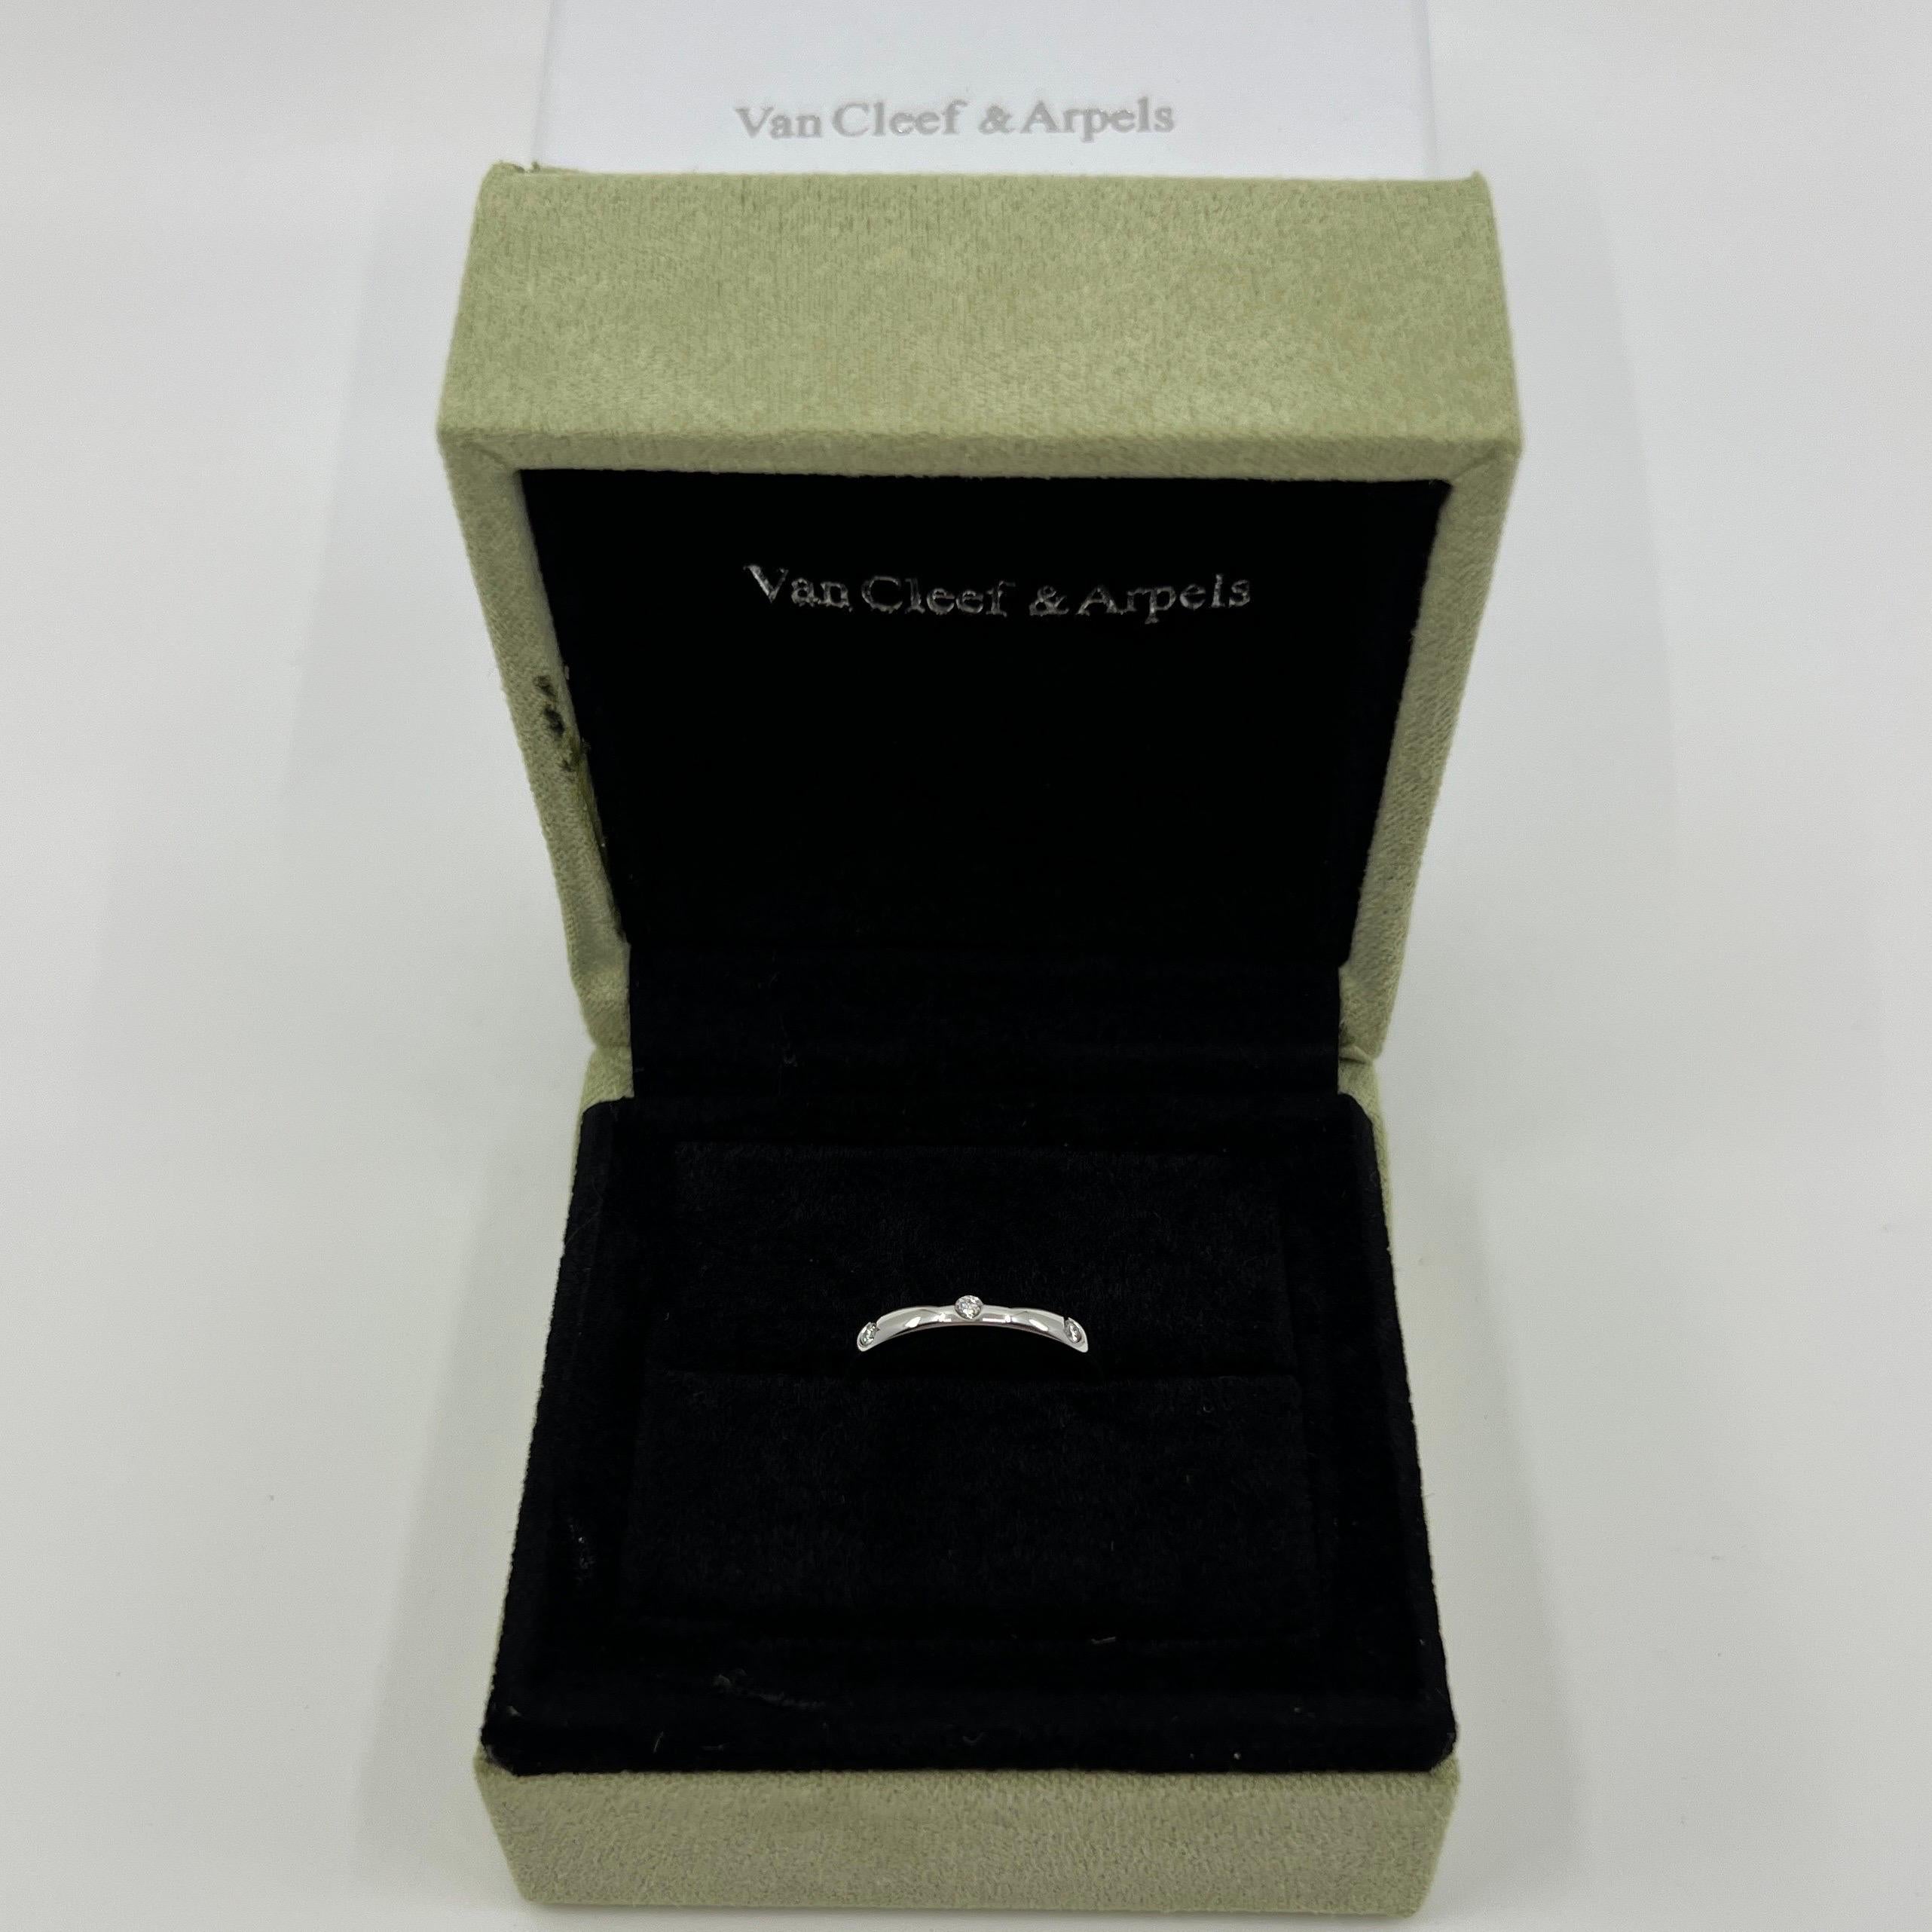 Bague à diamant en platine Van Cleef & Arpels.

Un anneau classique de la collection VCA Etoile. Serti de trois diamants blancs naturels de taille ronde de 1,8 mm en serti clos.
Les maisons de haute joaillerie comme Van Cleef & Arpels n'utilisent